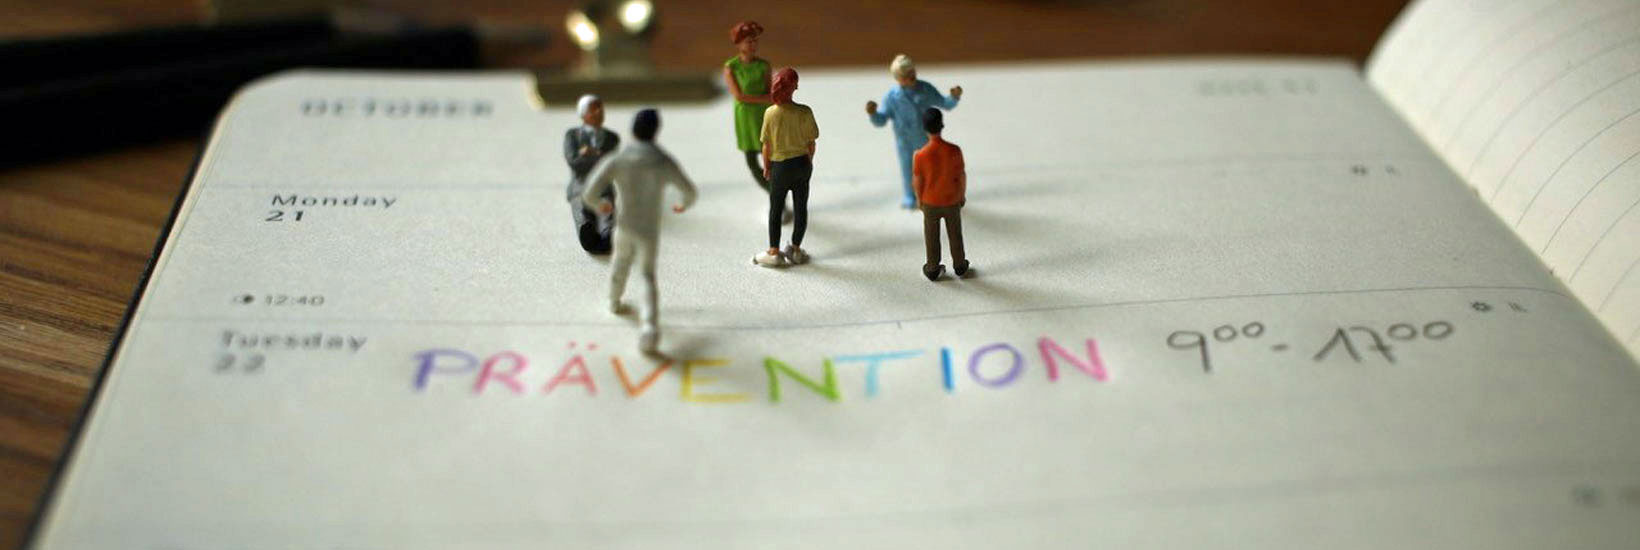 Kalender mit einem Eintrag "Prävention" aus bunten Buchstaben - auf dem Kalender sieht man Miniaturfiguren, die miteinander zu sprechen scheinen.